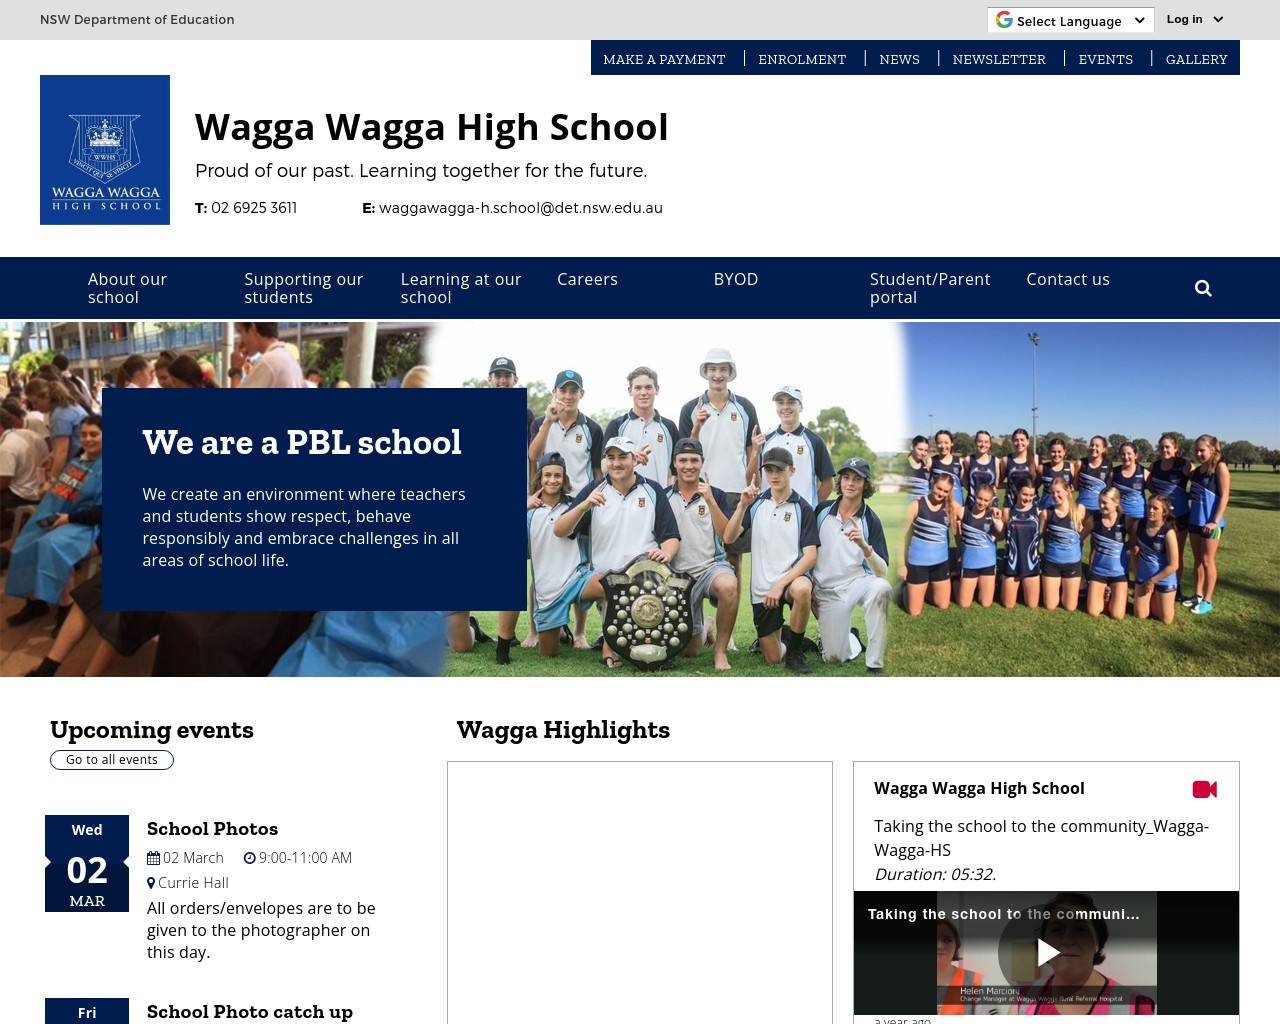 Wagga Wagga High School